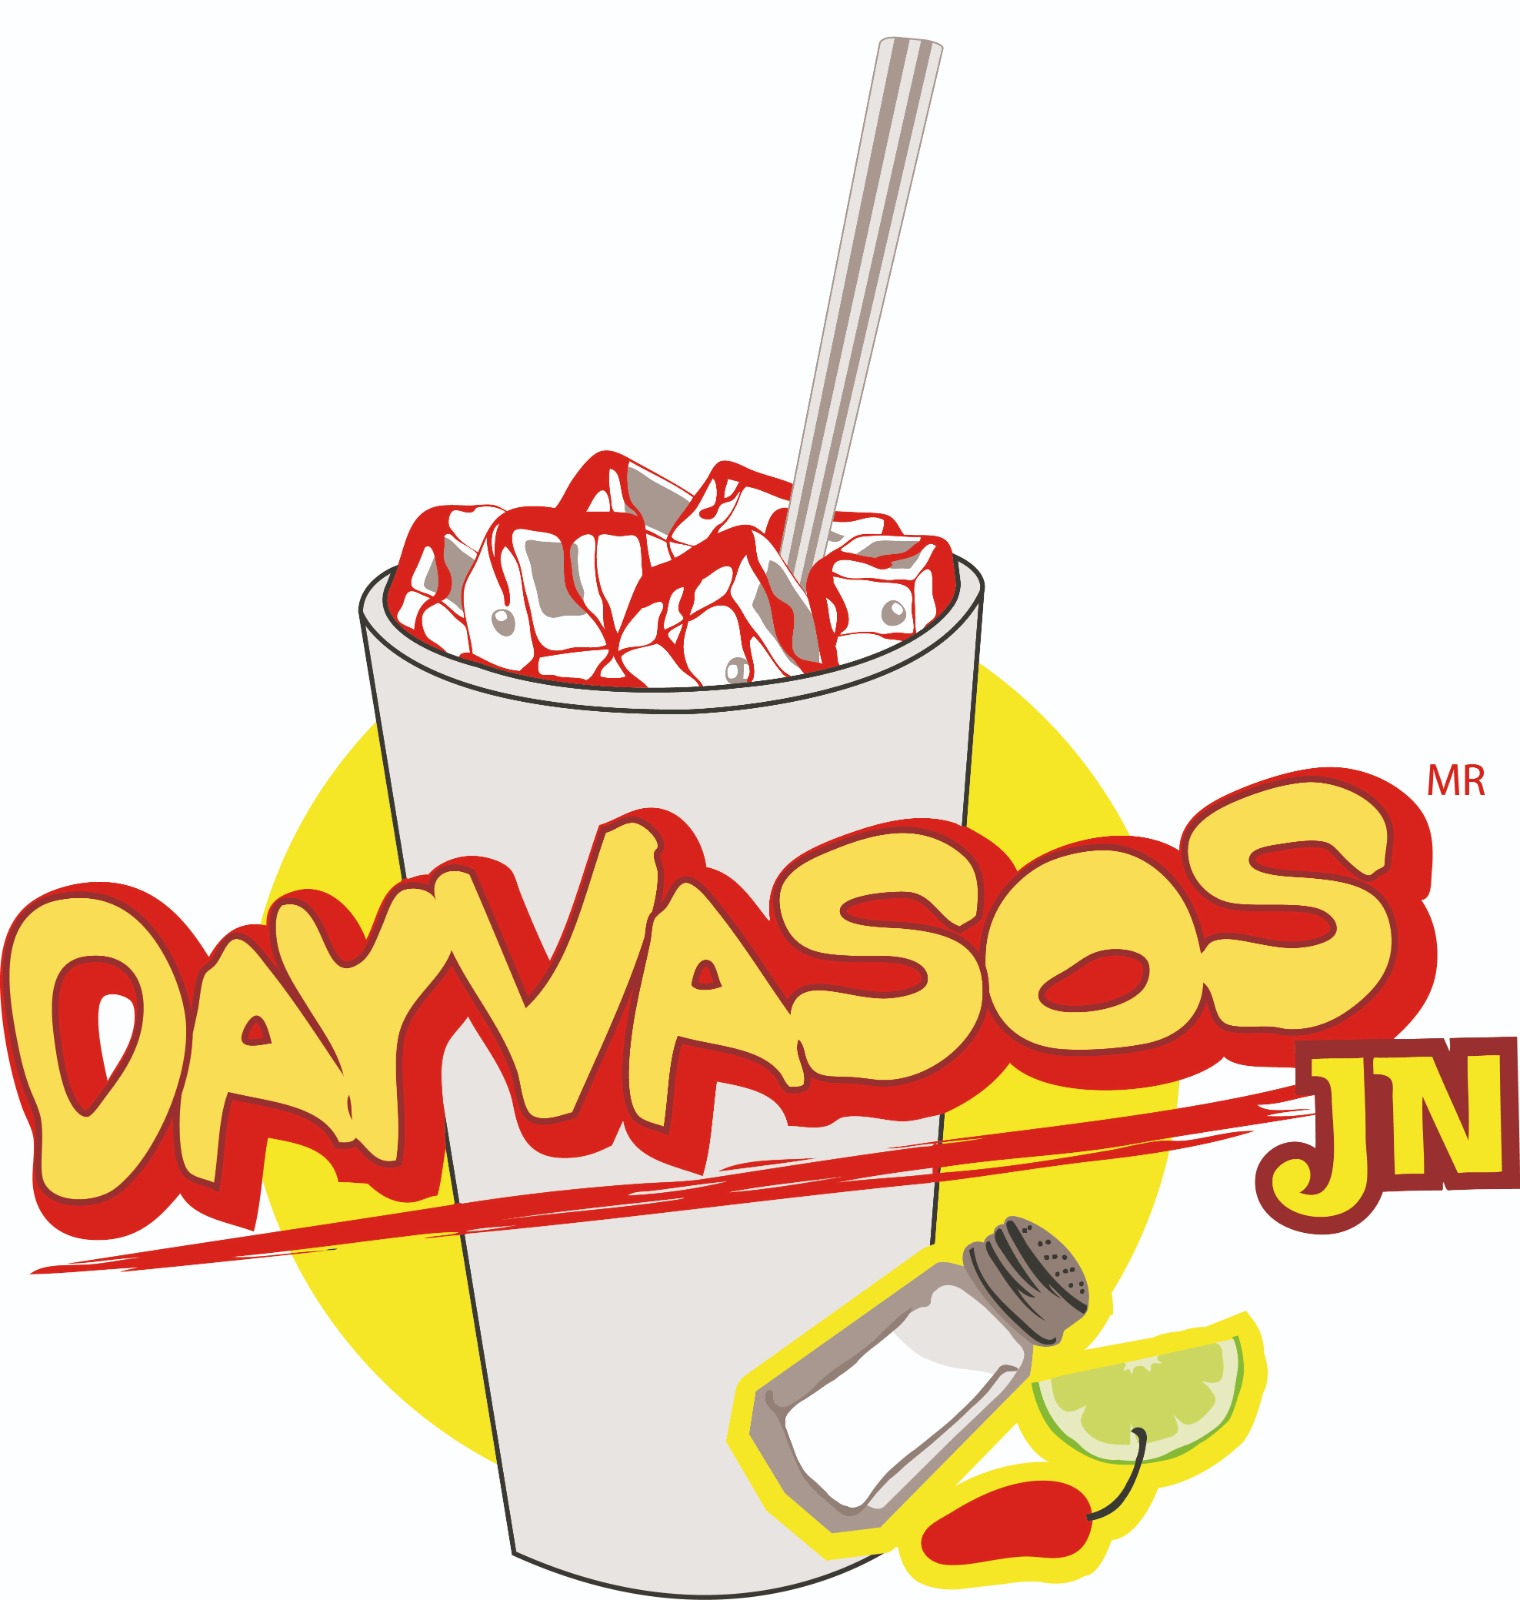 Logo Dayvasos JN